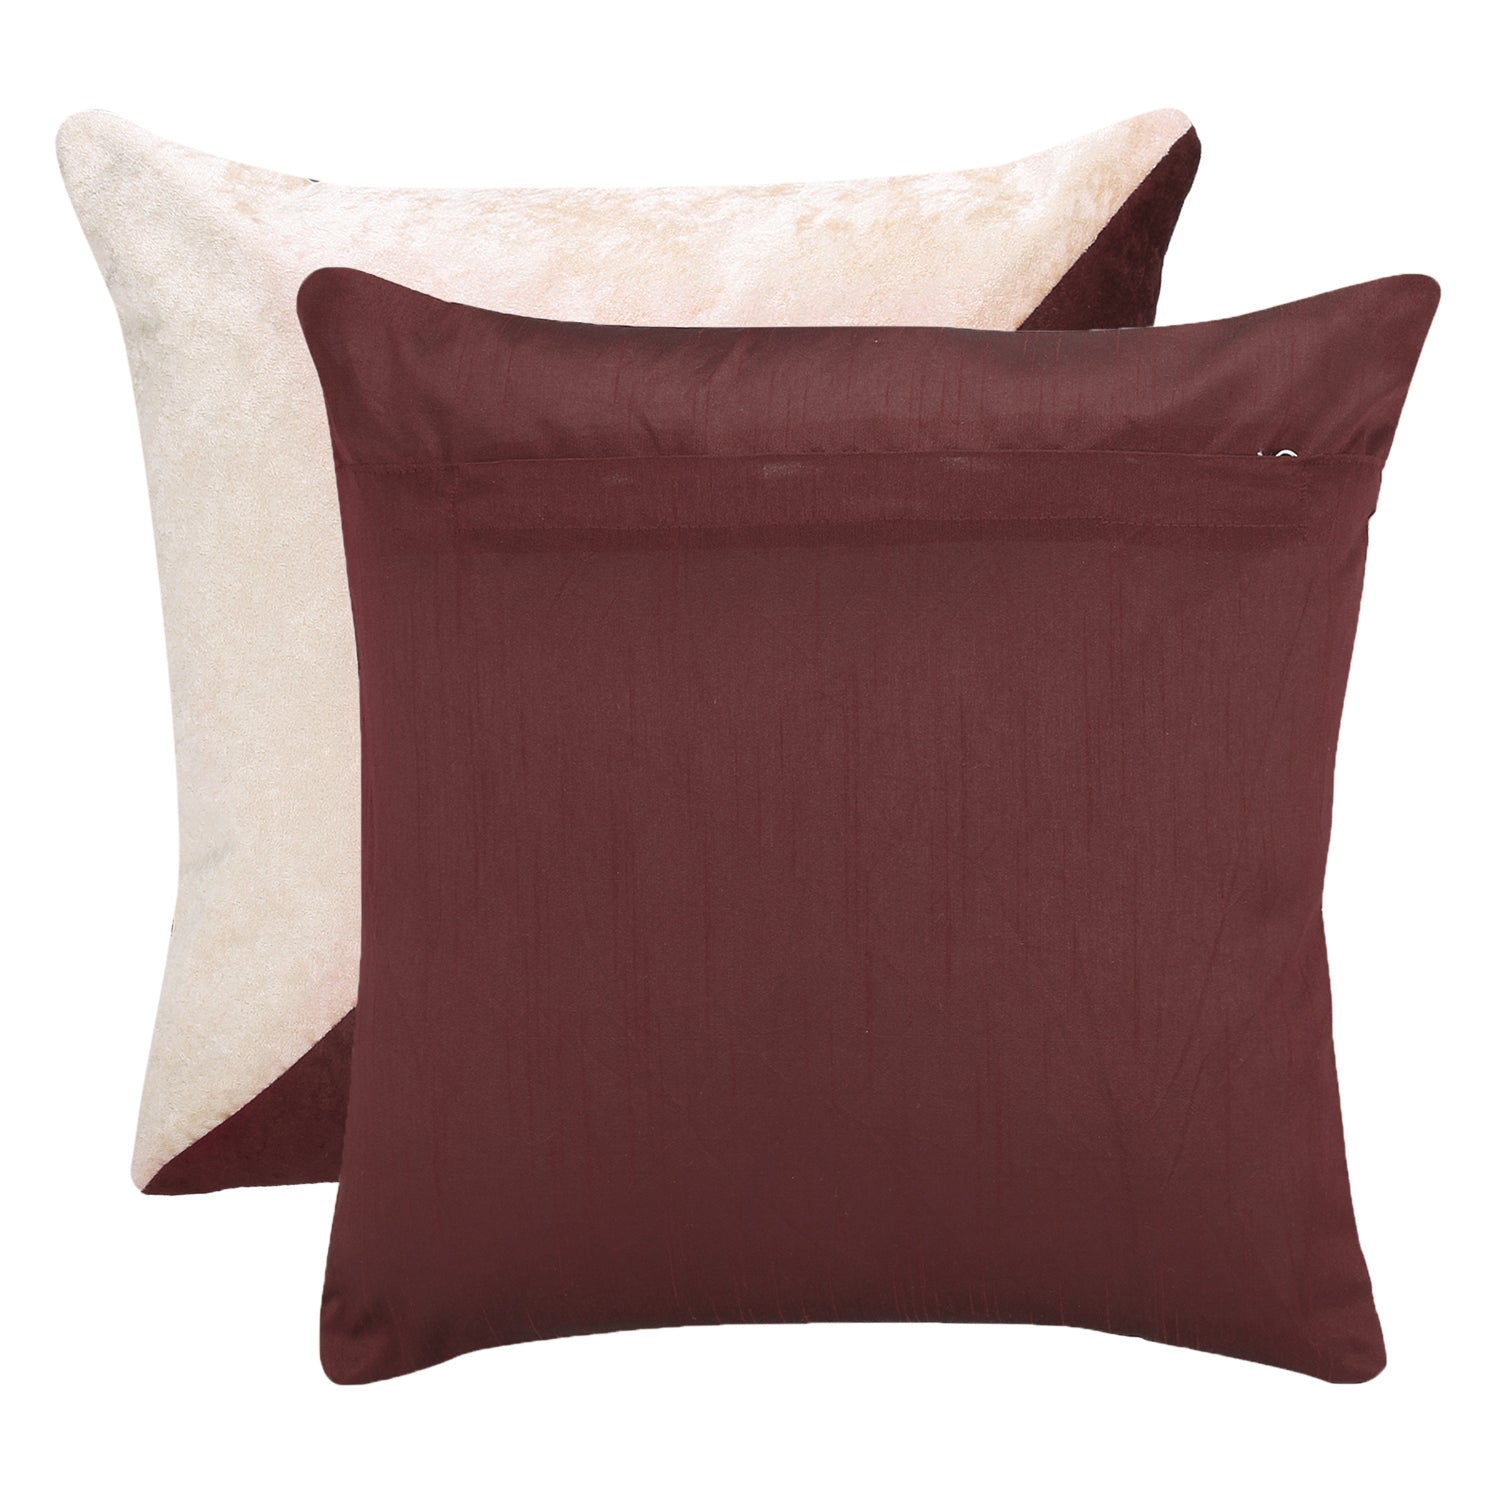 Desi Kapda Geometric Cushions Cover